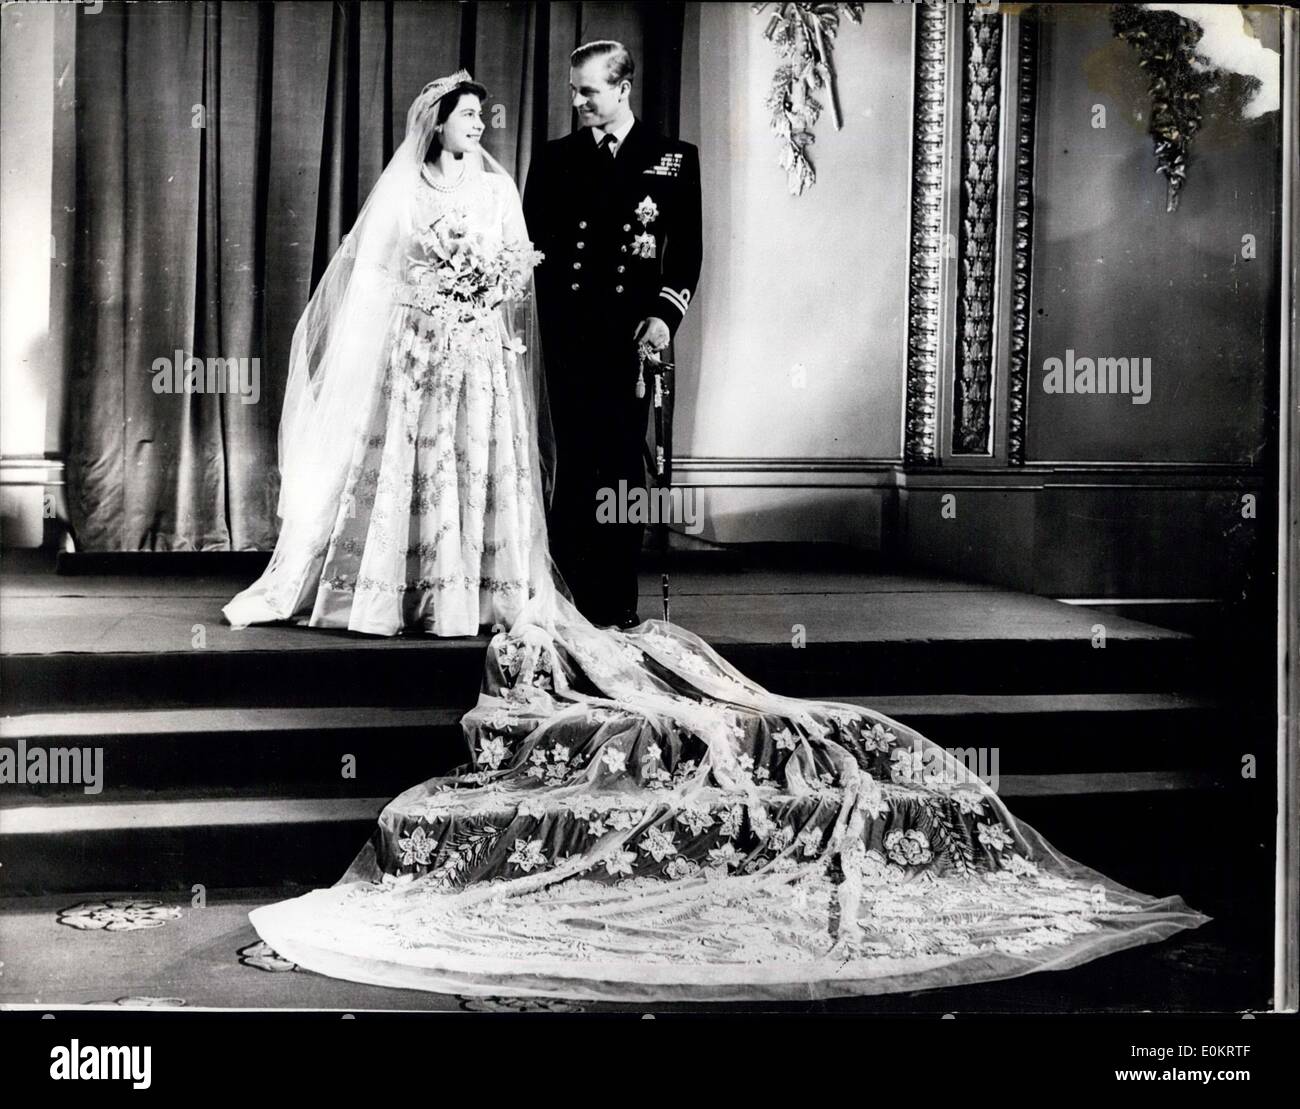 20 novembre 1947 - il y a 25 ans la Reine et le Prince ont posé pour leurs photos de mariage au palais de Buckingham. En tant que Princesse Elizabet, elle s'est mariée à l'abbaye de Westminster le 20 novembre, 1947. Banque D'Images